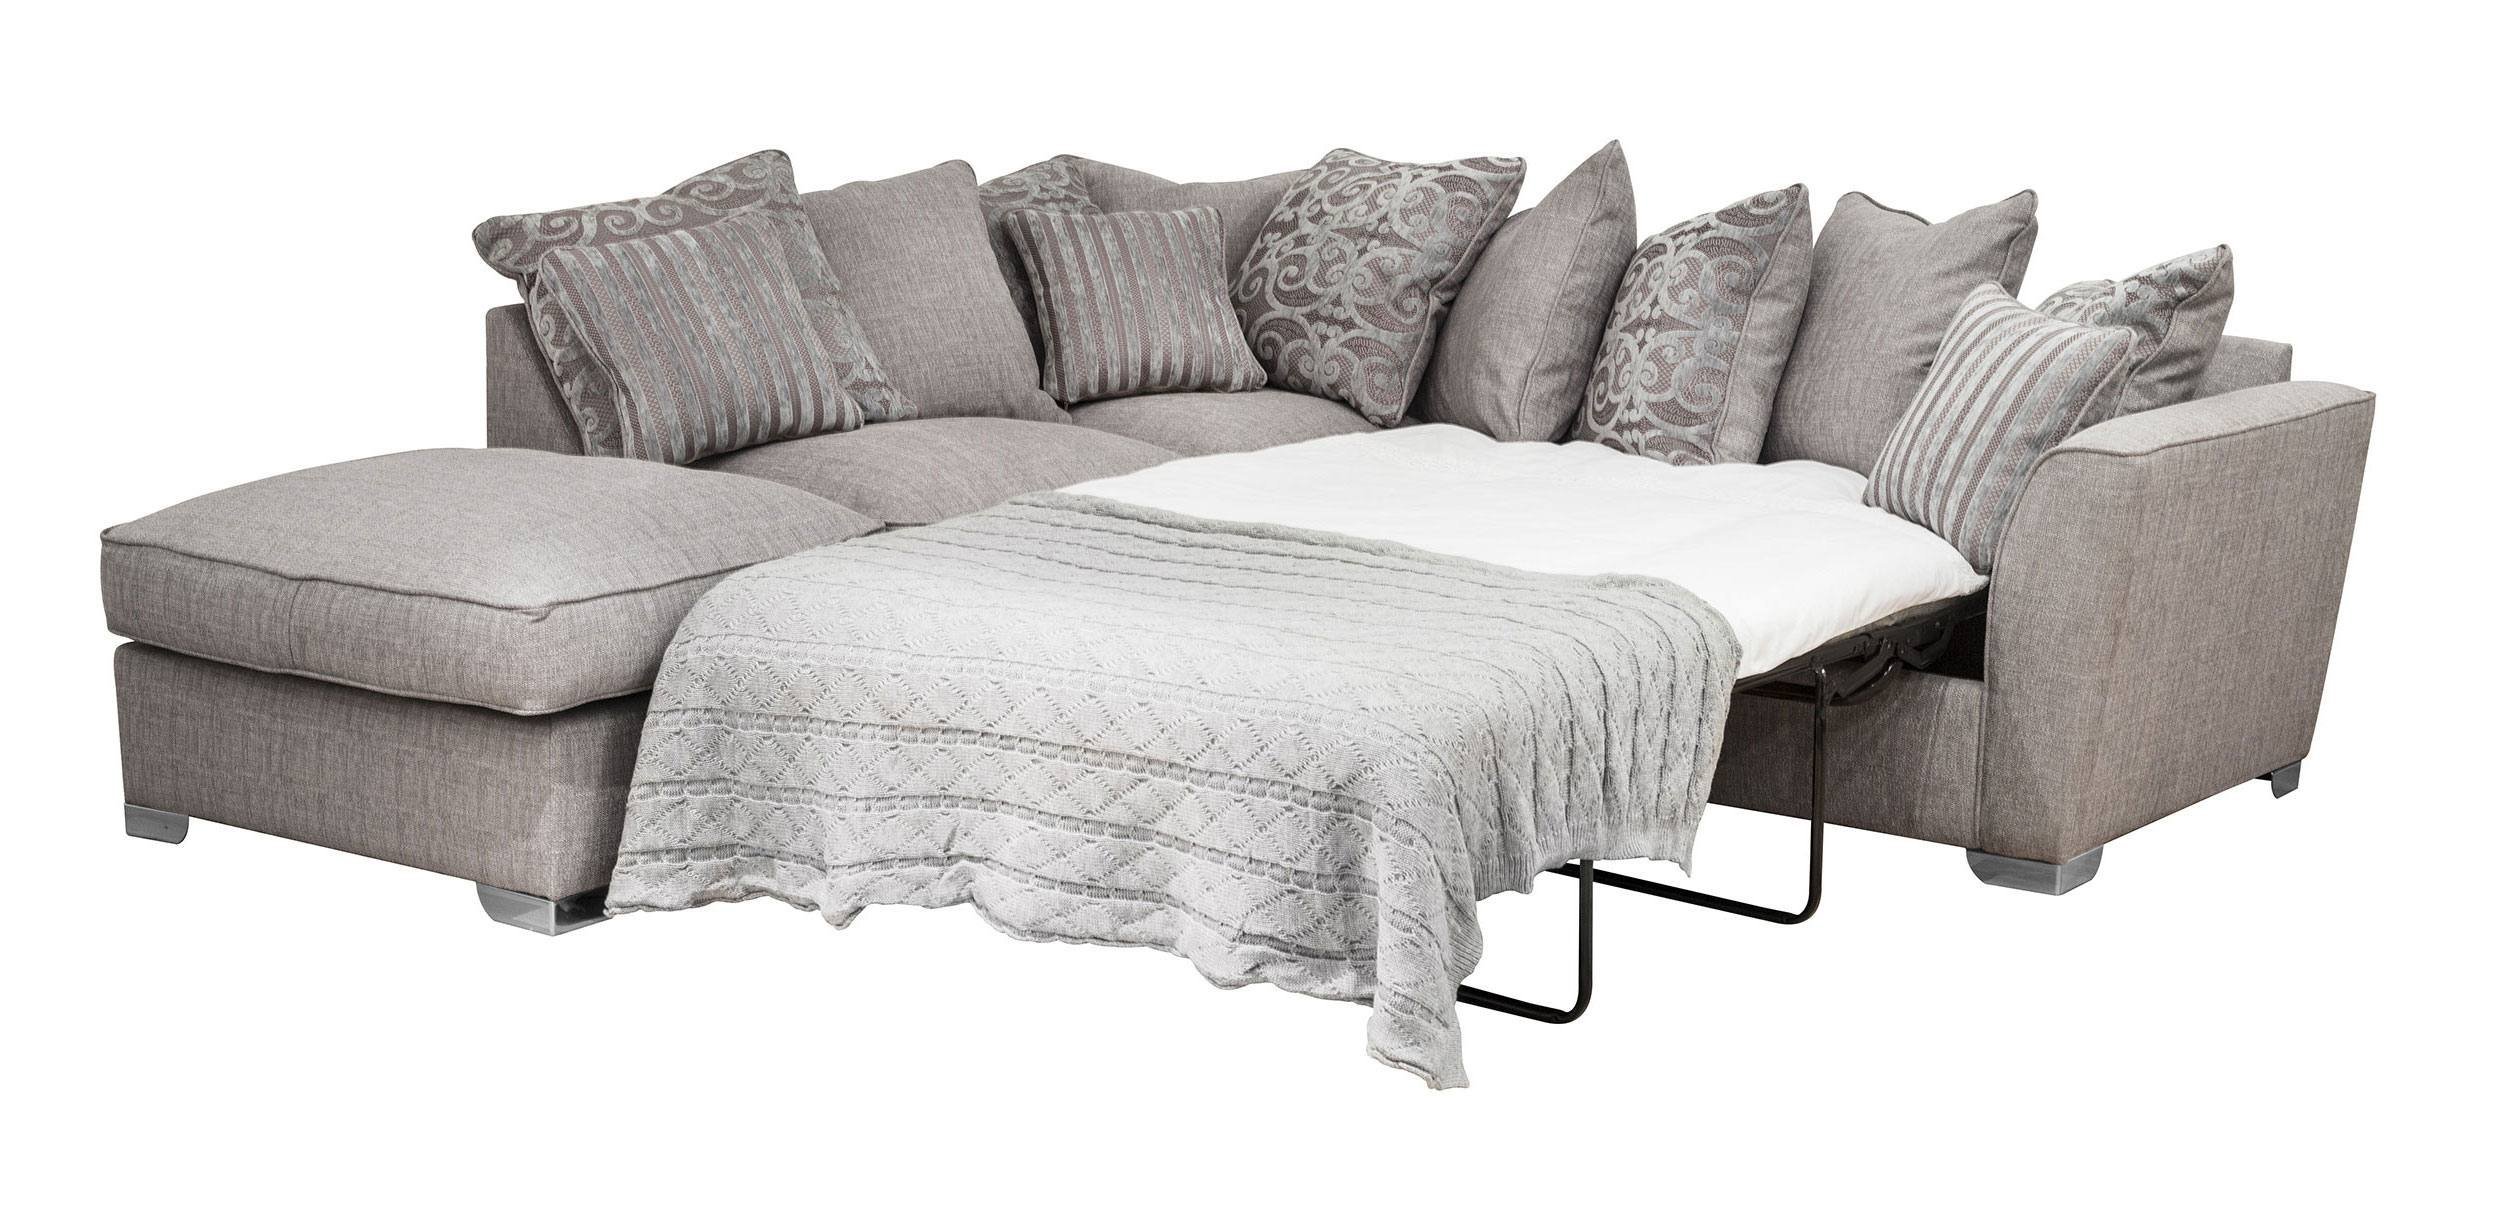 sofa bed deals vancouver